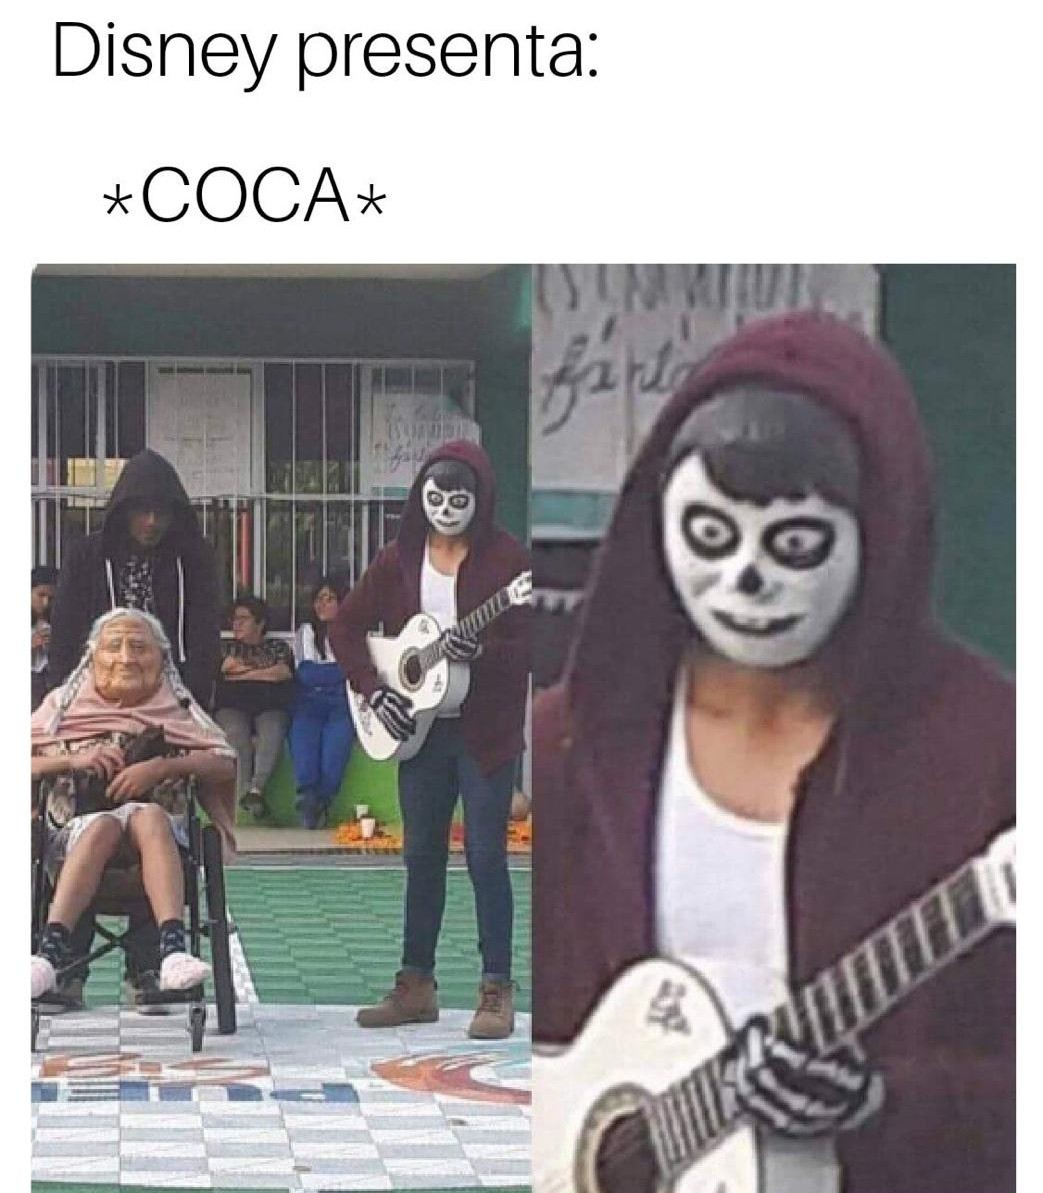 Coca** - meme